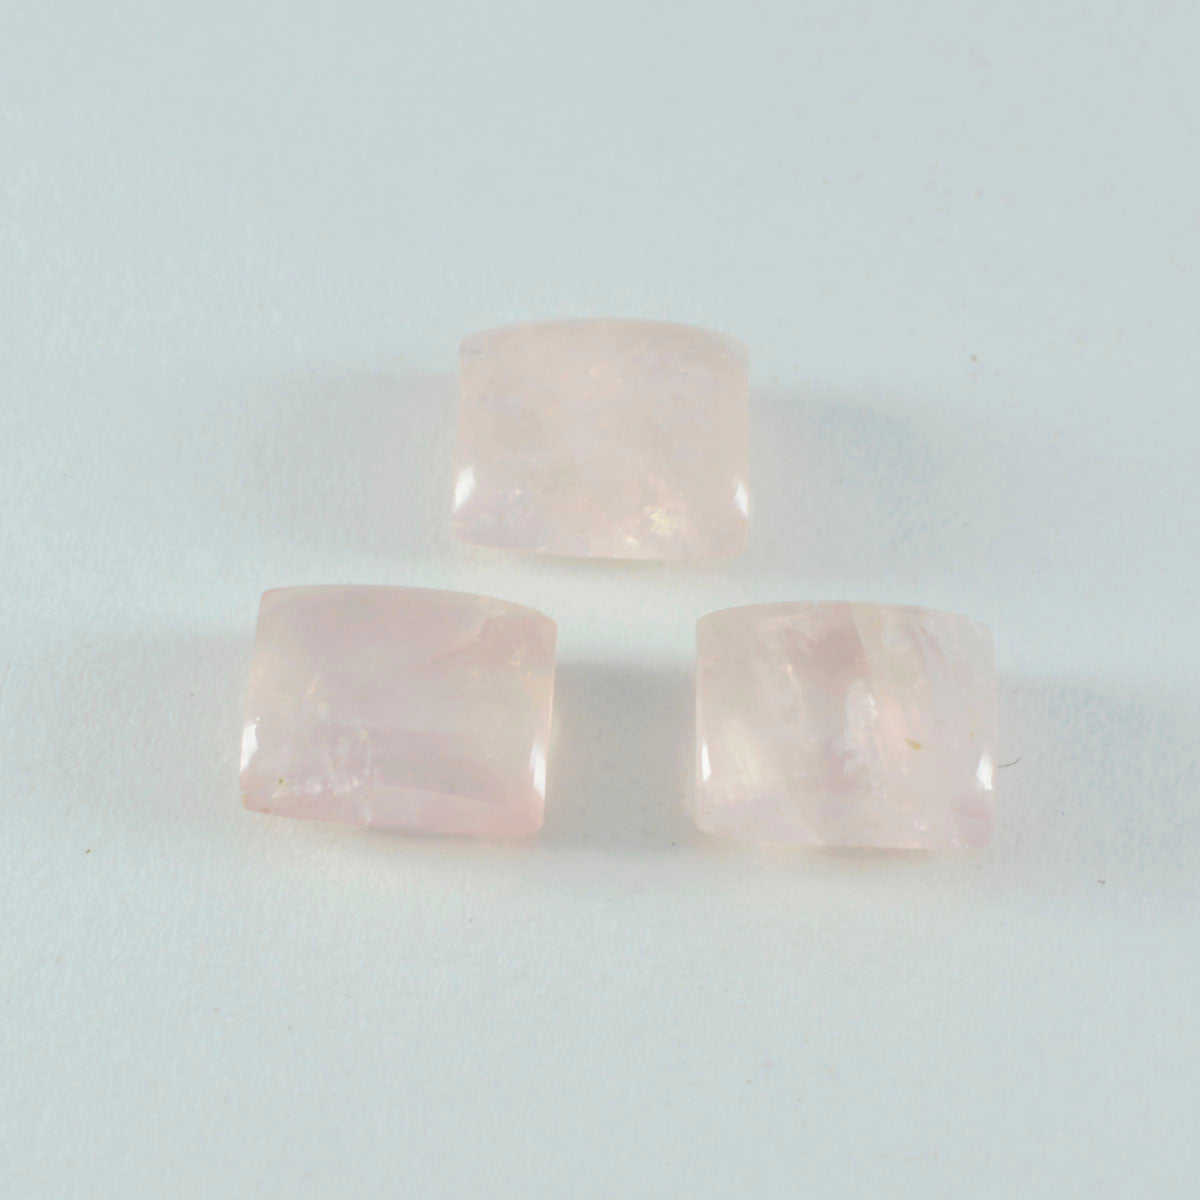 Riyogems 1 Stück rosafarbener Rosenquarz-Cabochon, 10 x 12 mm, Achteckform, fantastischer Qualitätsstein